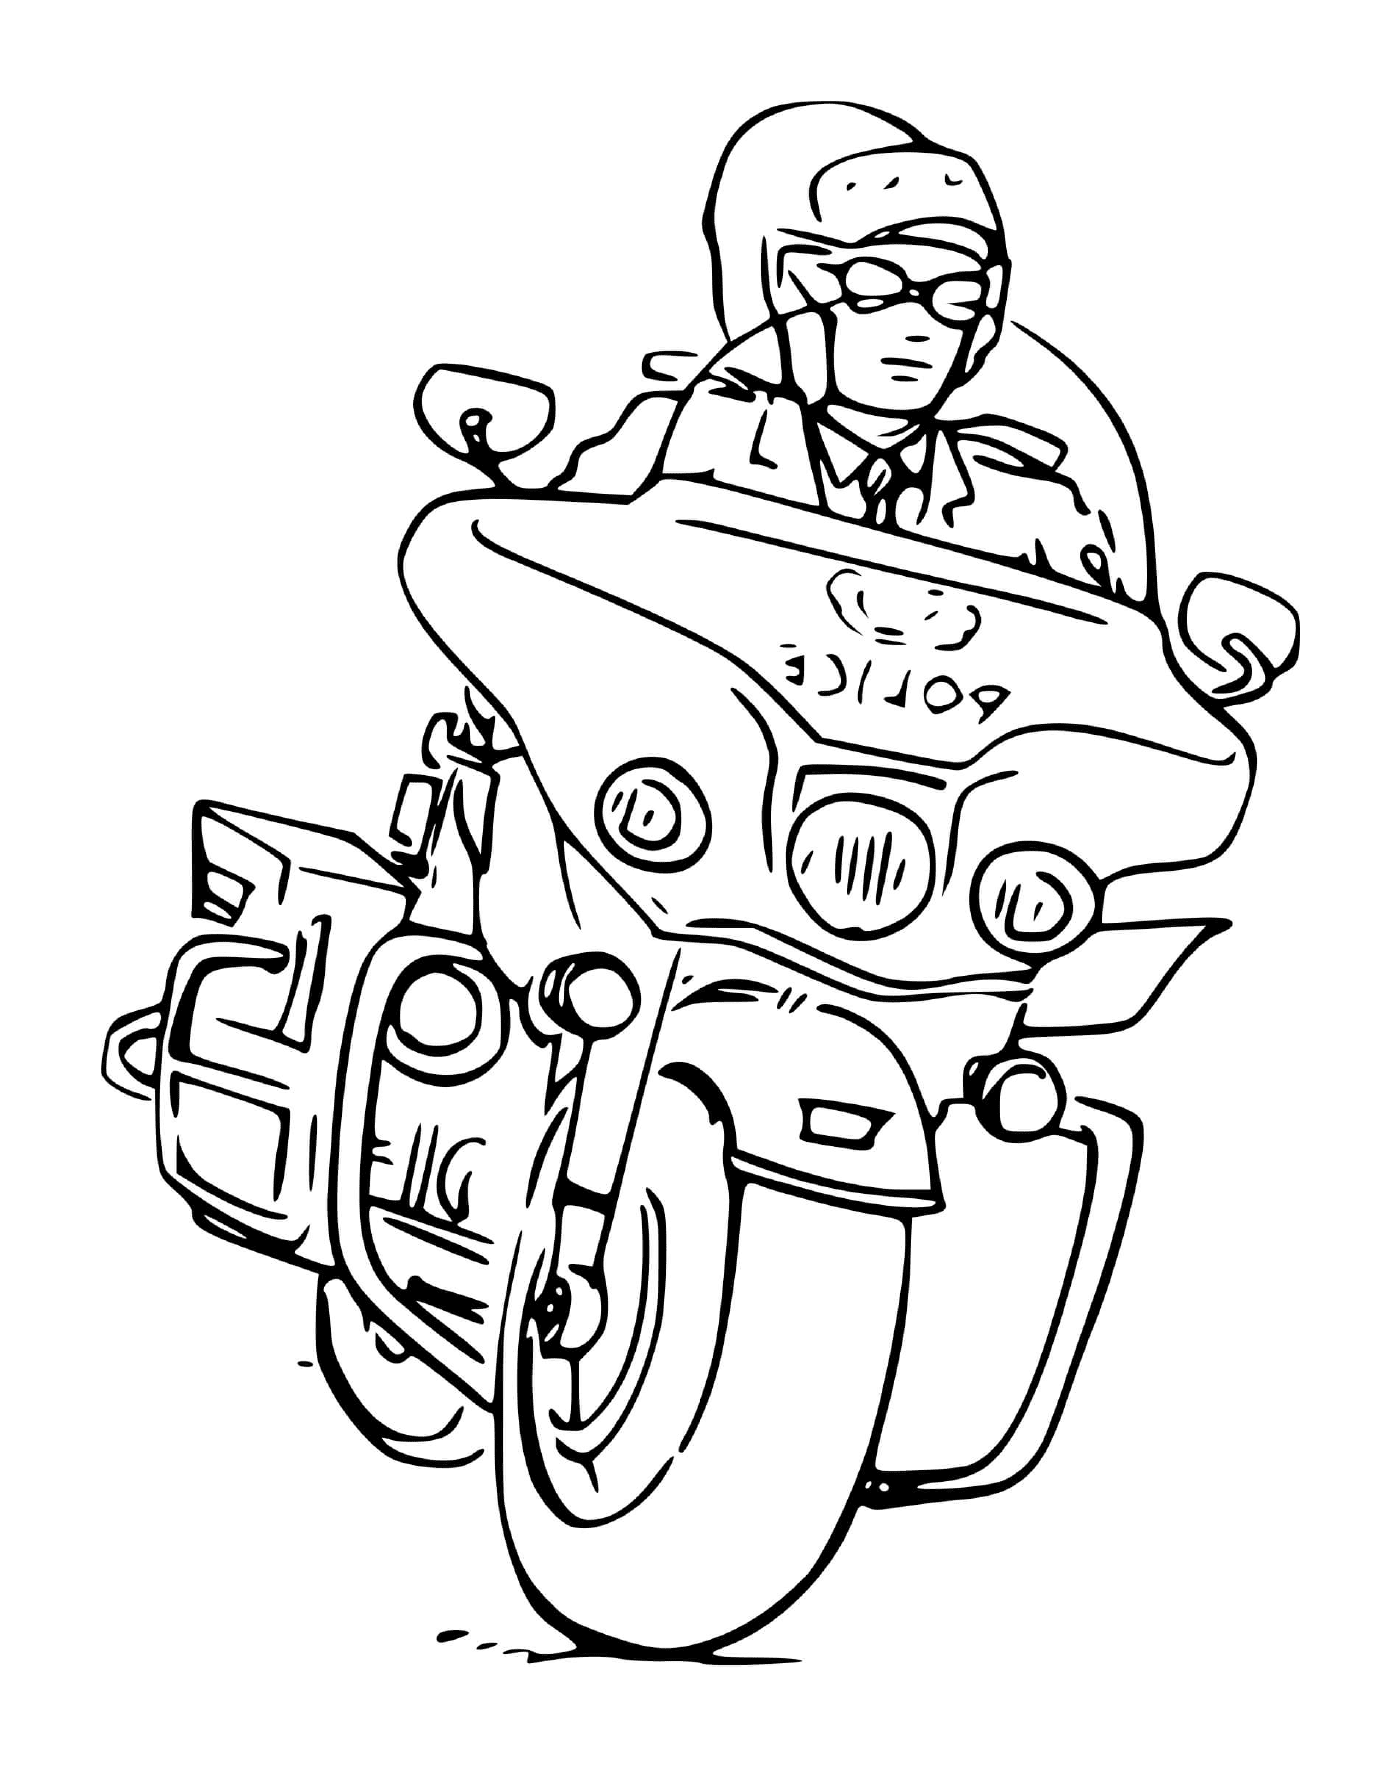  Police motorbike 